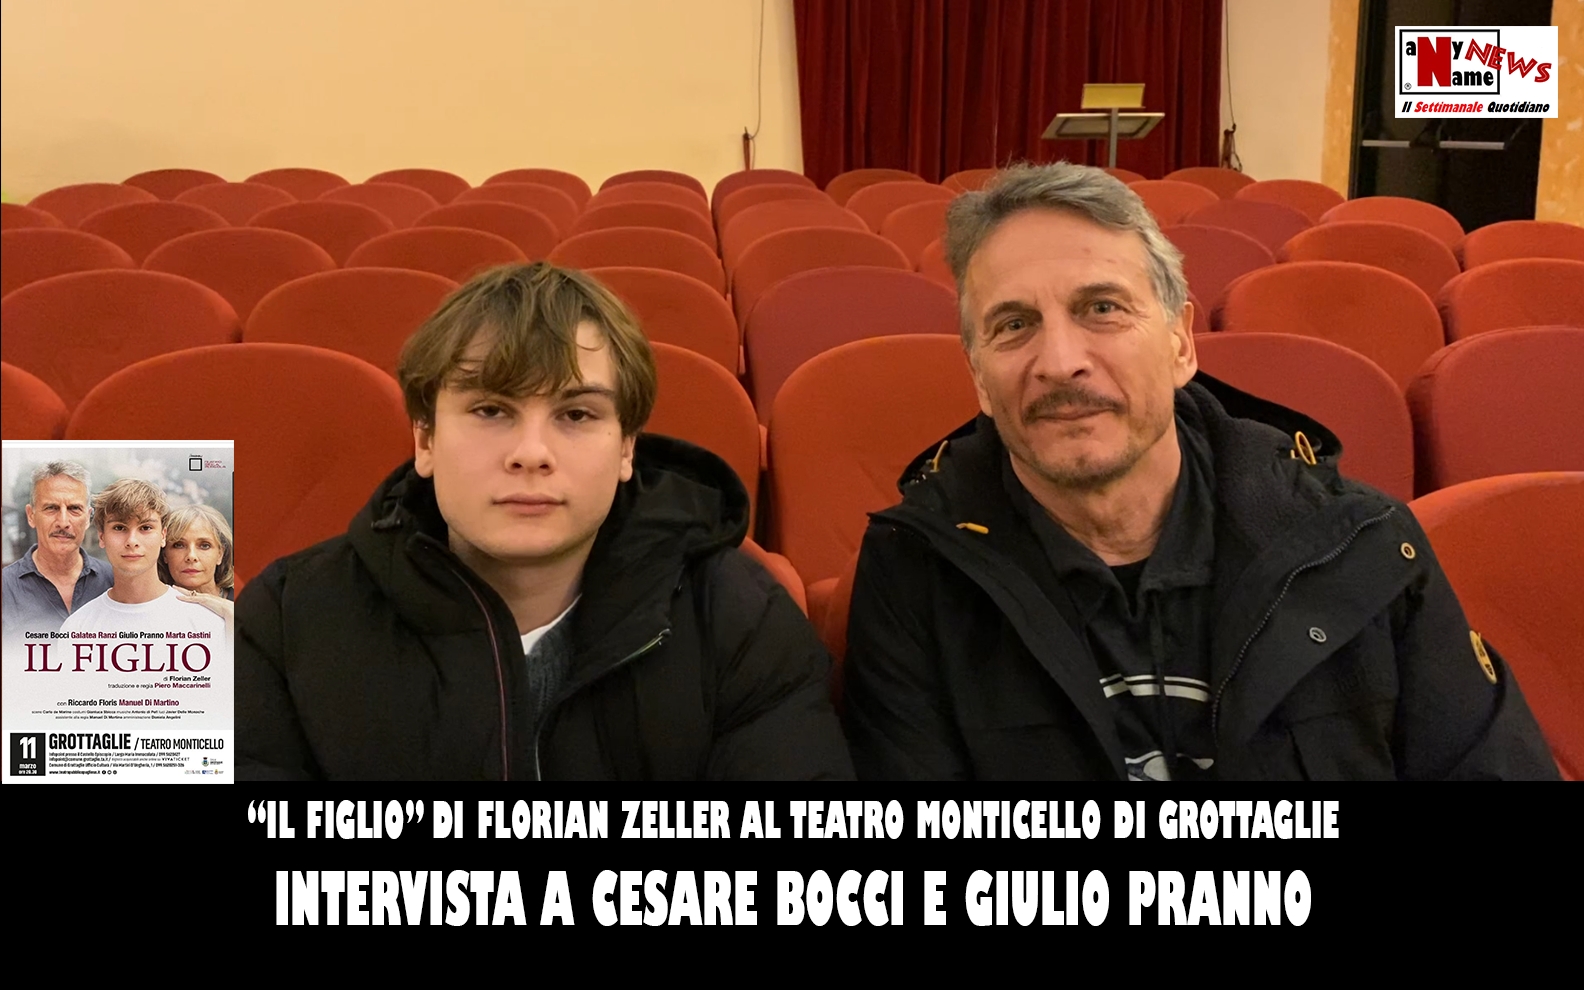 Intervista a Cesare Bocci e Giulio Pranno | Al Teatro Monticello di Grottaglie con lo spettacolo “Il Figlio”